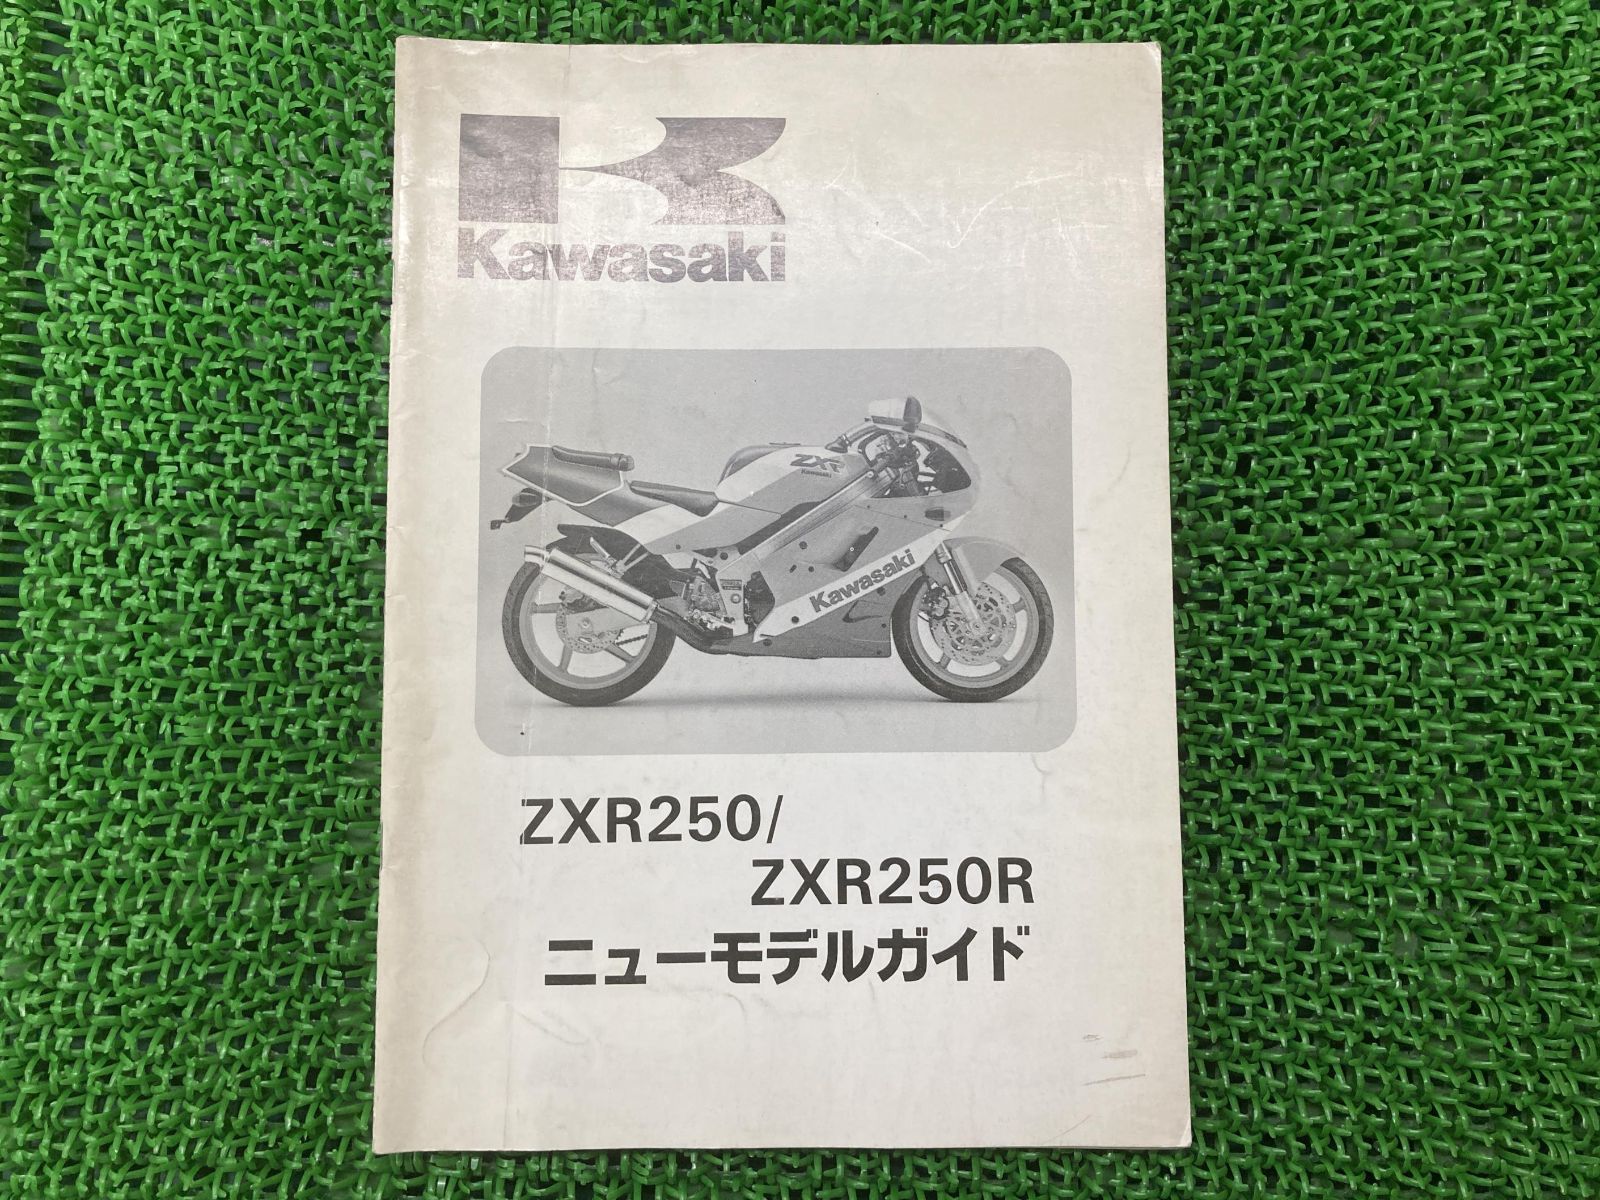 ZXR250 フロントブレーキディスク 右 カワサキ 純正  バイク 部品 ZX250 曲がり無し そのまま使える 修復素材に 車検 Genuine:22205456